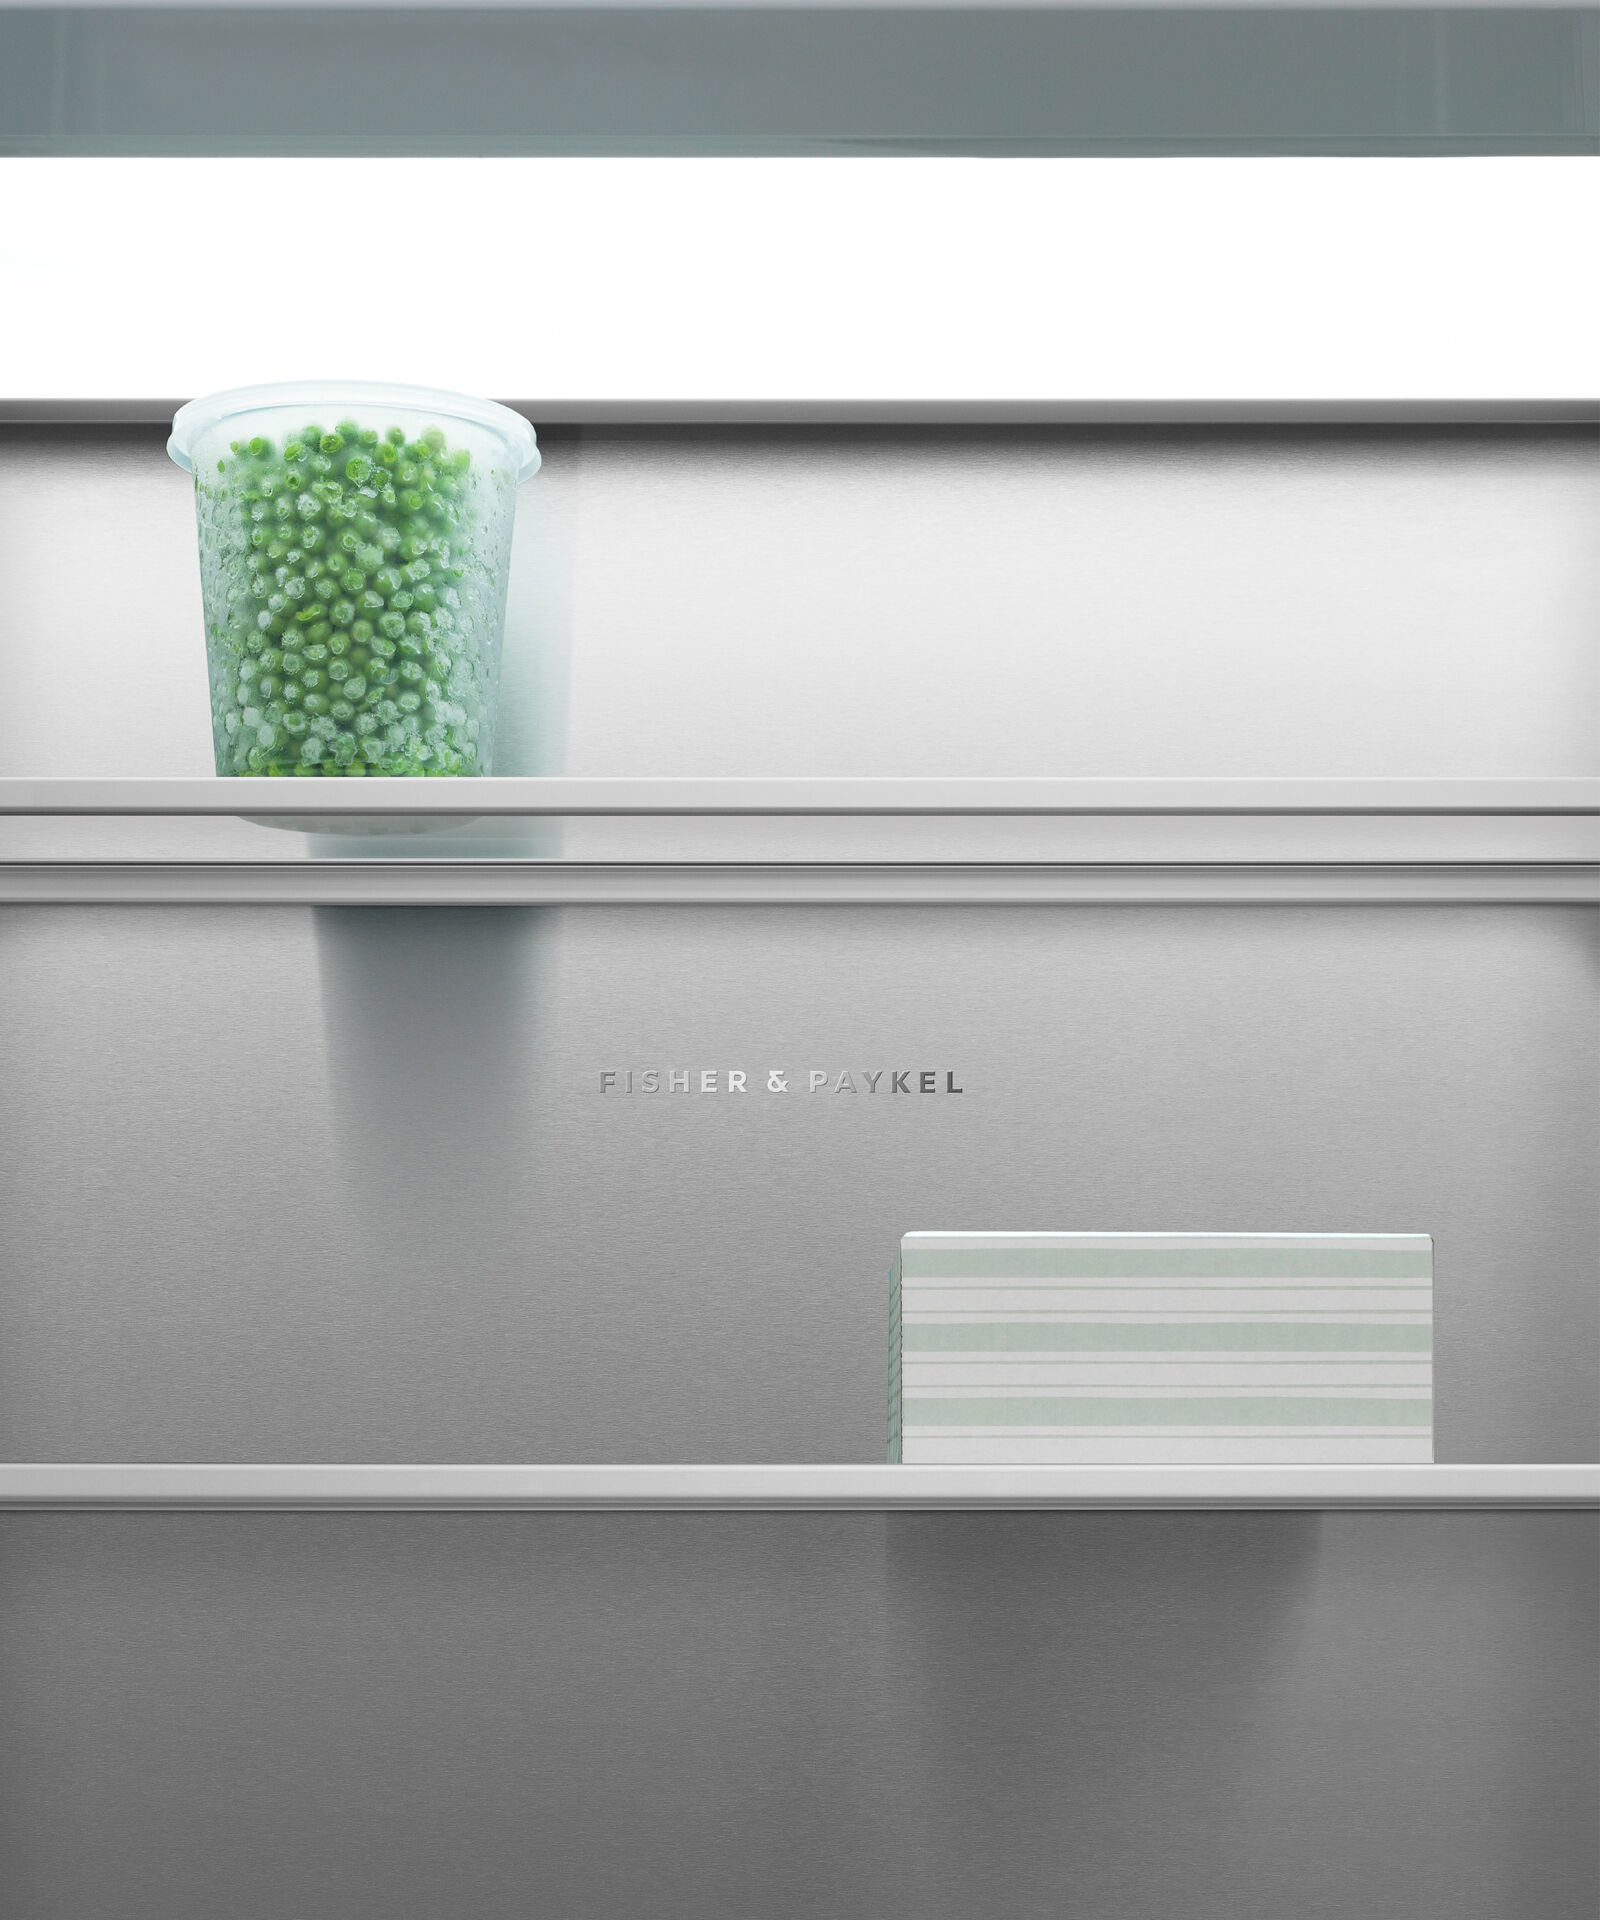 嵌入式立式冷凍櫃, 76cm, 自動製冰 gallery image 13.0